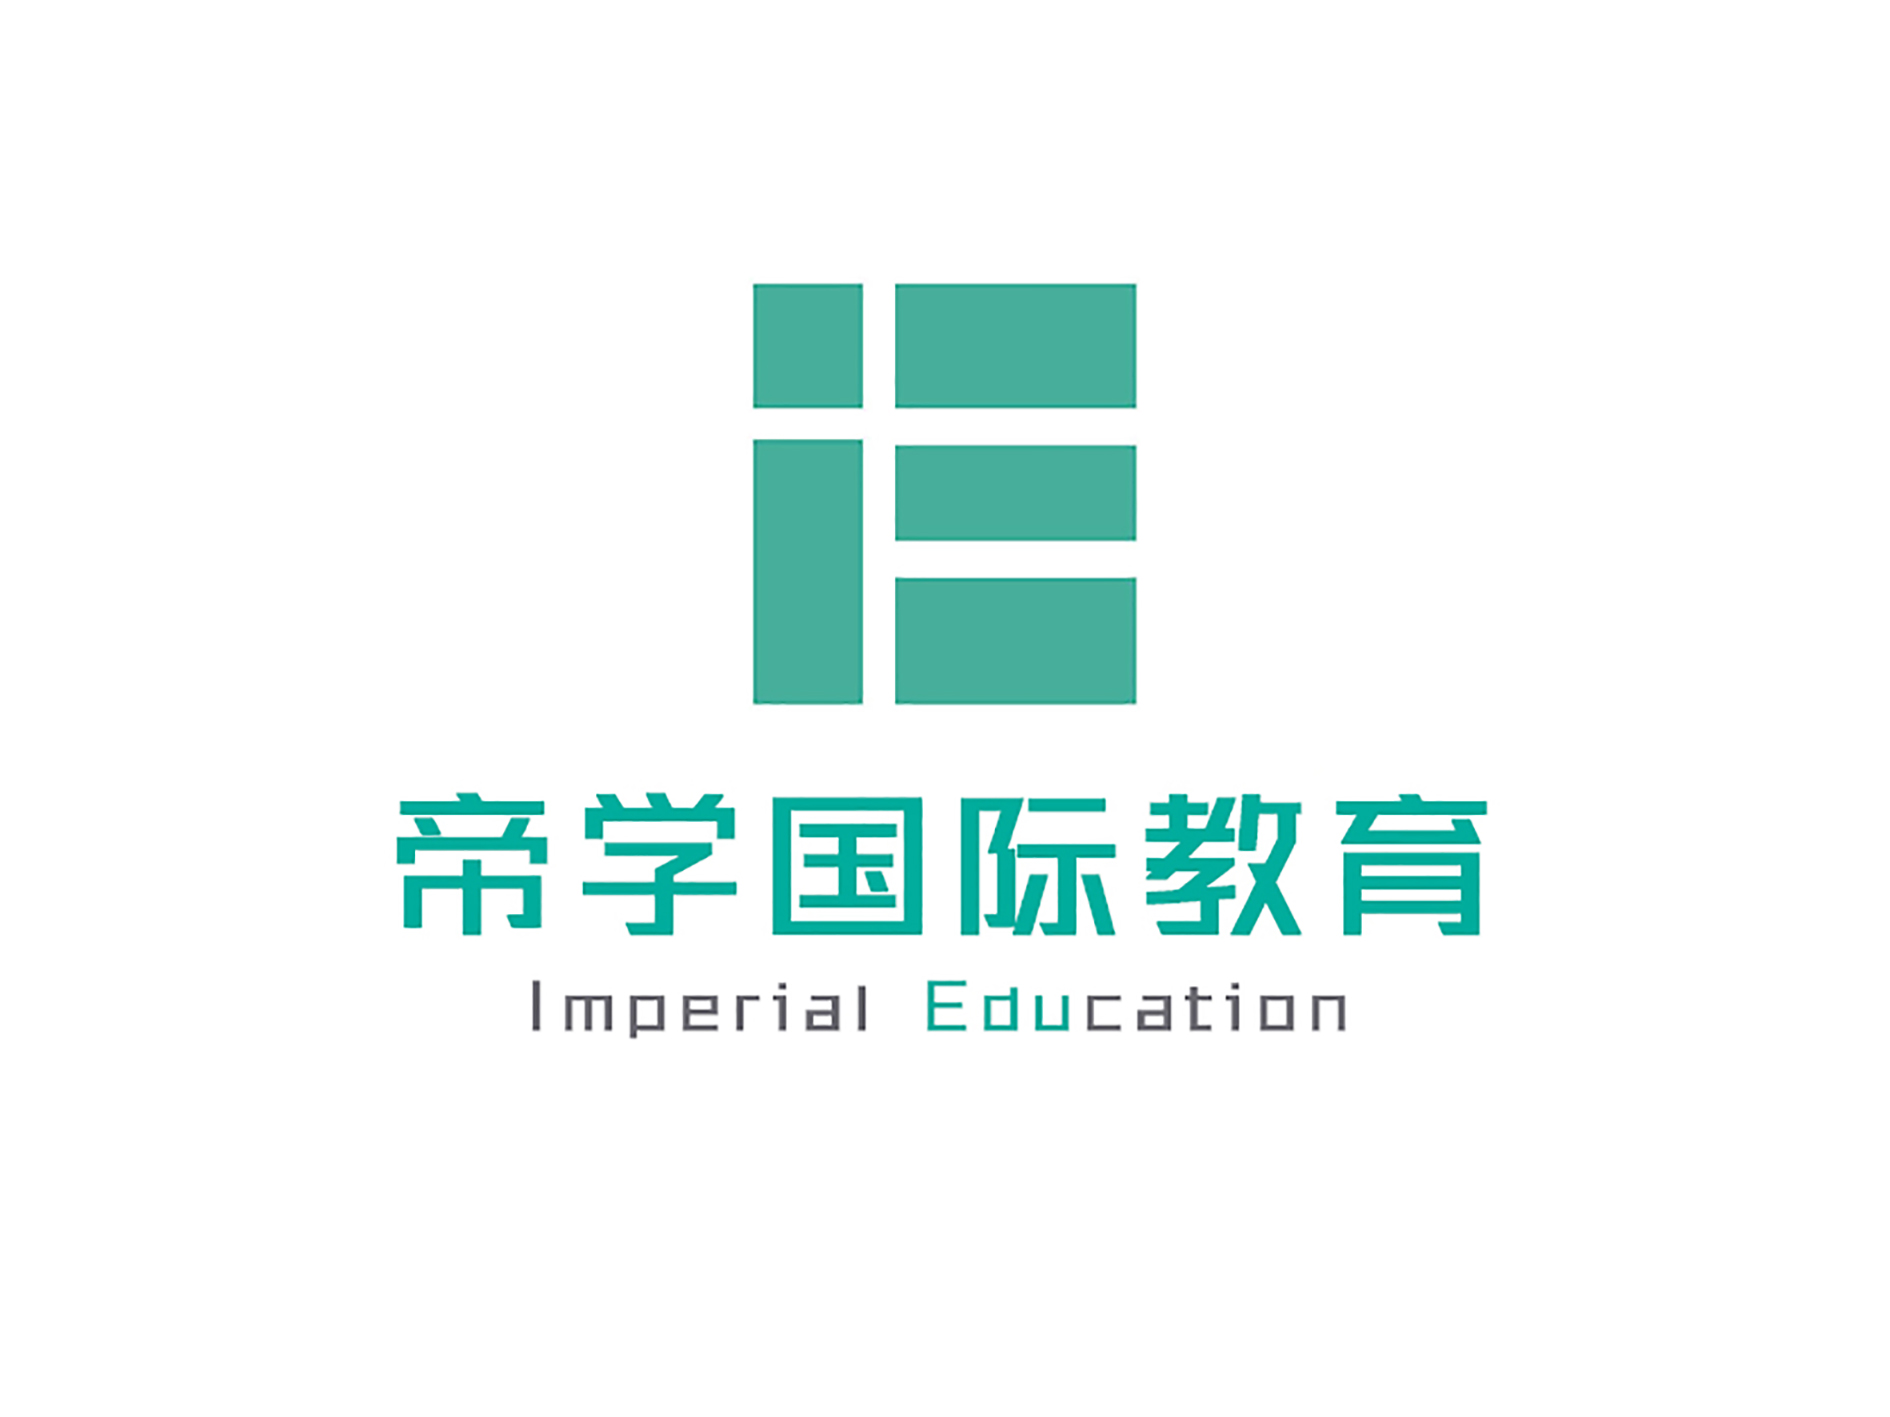 广州帝学国际教育